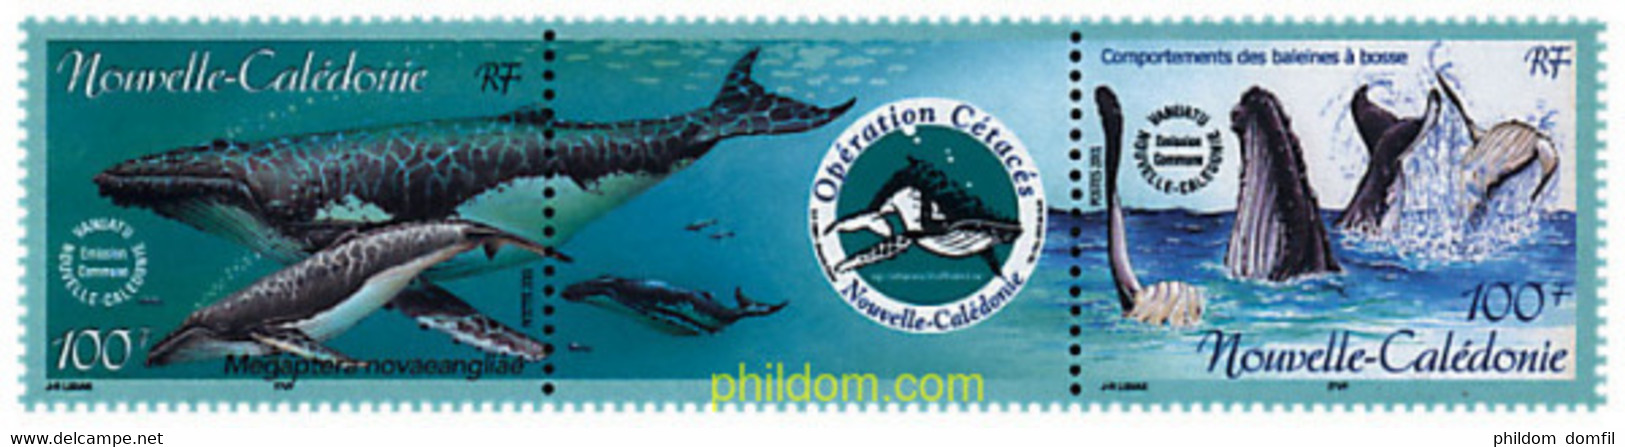 5405 MNH NUEVA CALEDONIA 2001 OPERACION CETACEOS - Usados